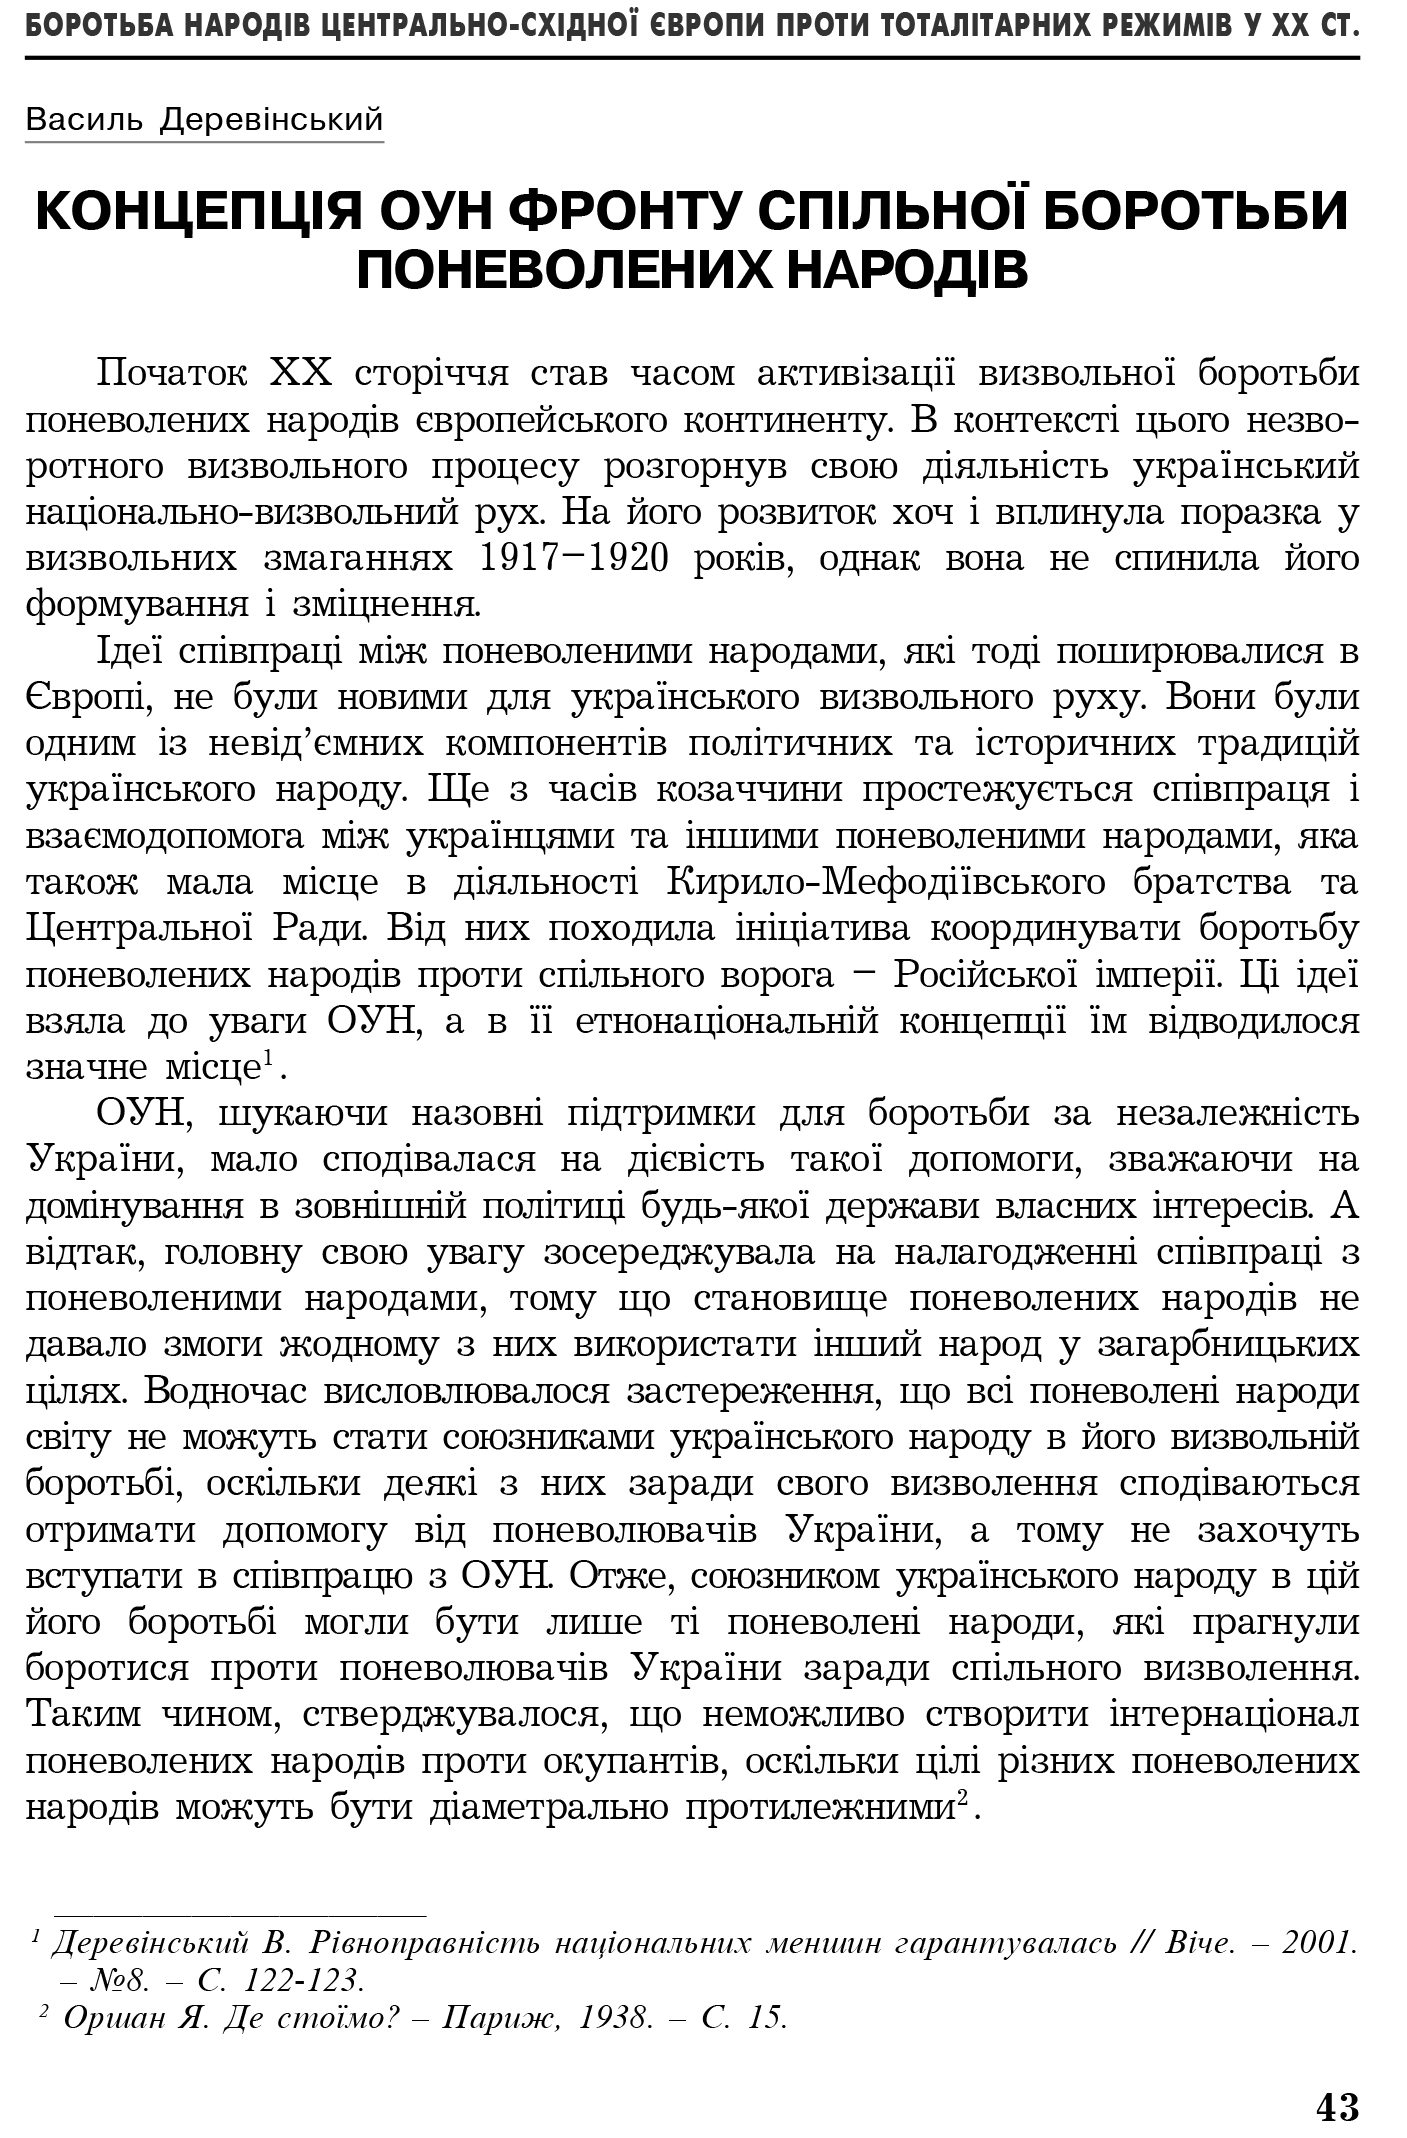 Український визвольний рух №4, ст. 43 - 51